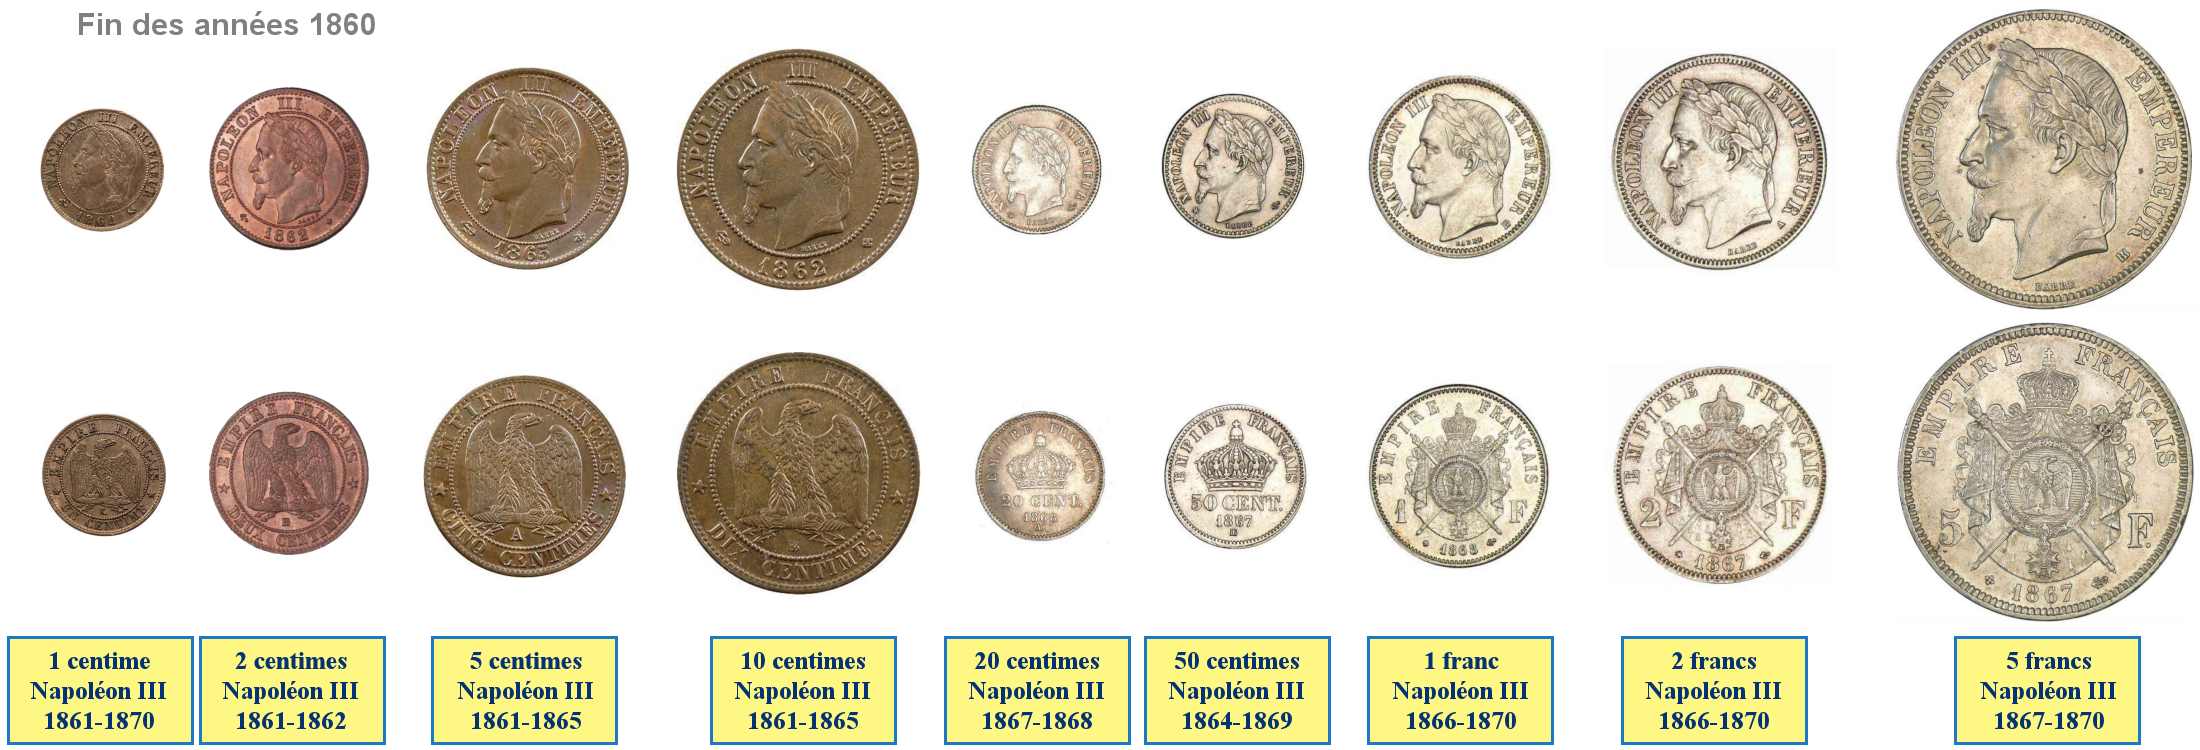 Photo de pièces de monnaies de Napoléon III